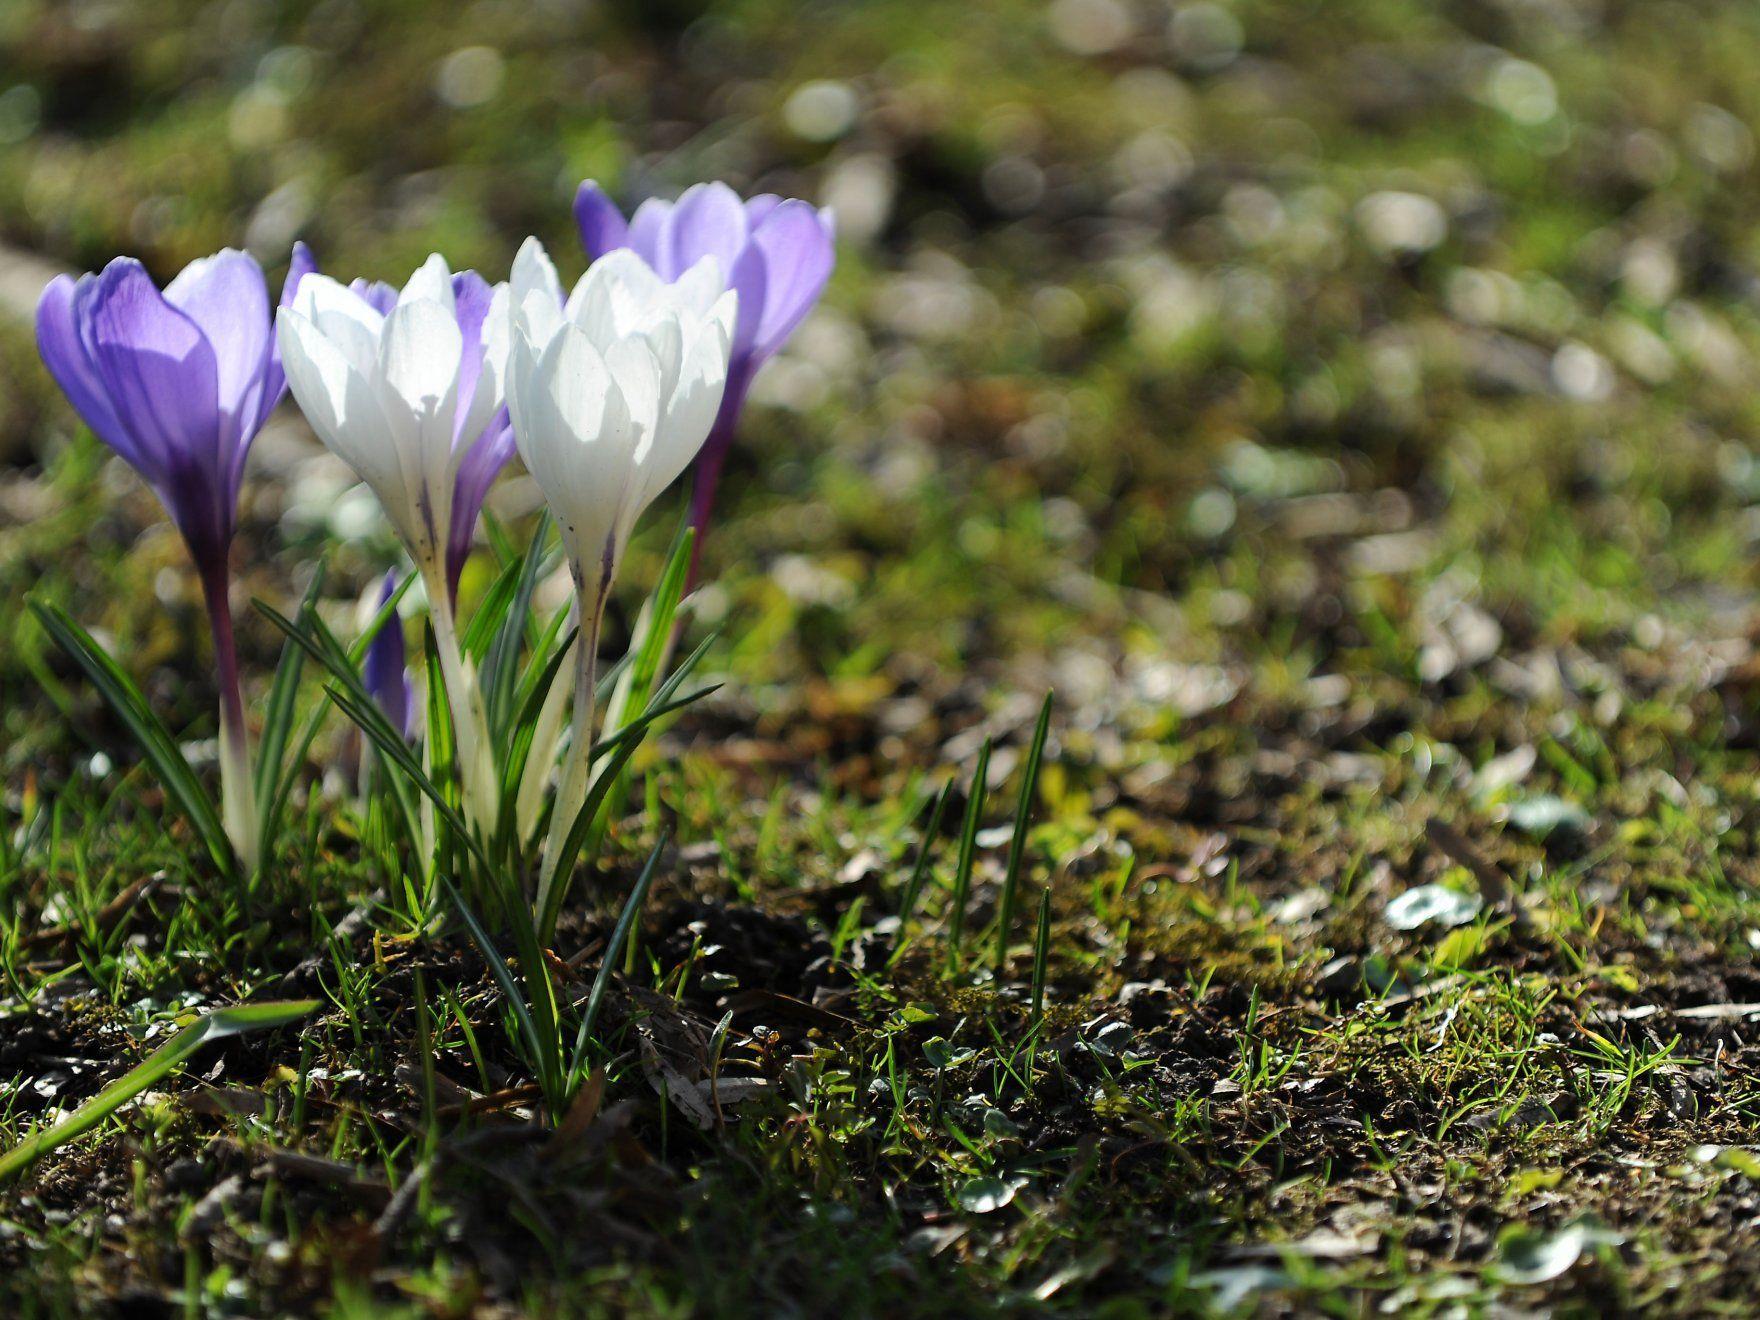 Am Dienstag, um exakt 6.14 Uhr hat der Frühling offiziell begonnen.